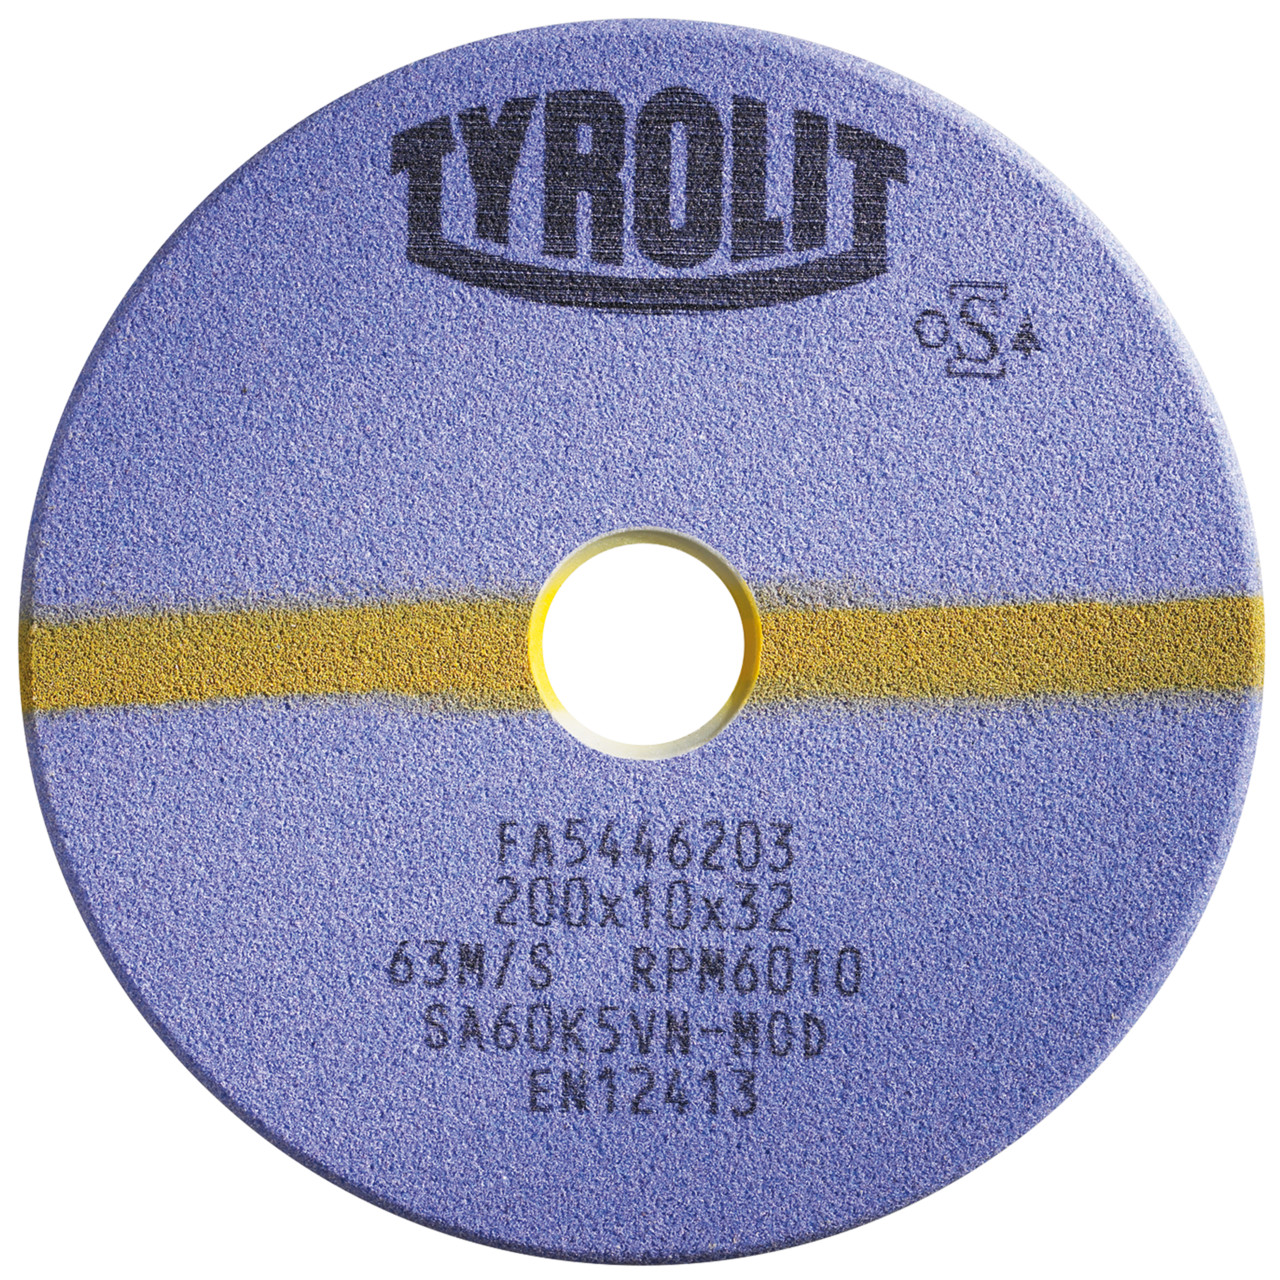 TYROLIT Schleifwerkzeuge für Sägeschärfautomaten DxTxH 150x3x32 Für Kreissägen und stellitierte Band- und Gattersägen, Form: 1C, Art. 226295